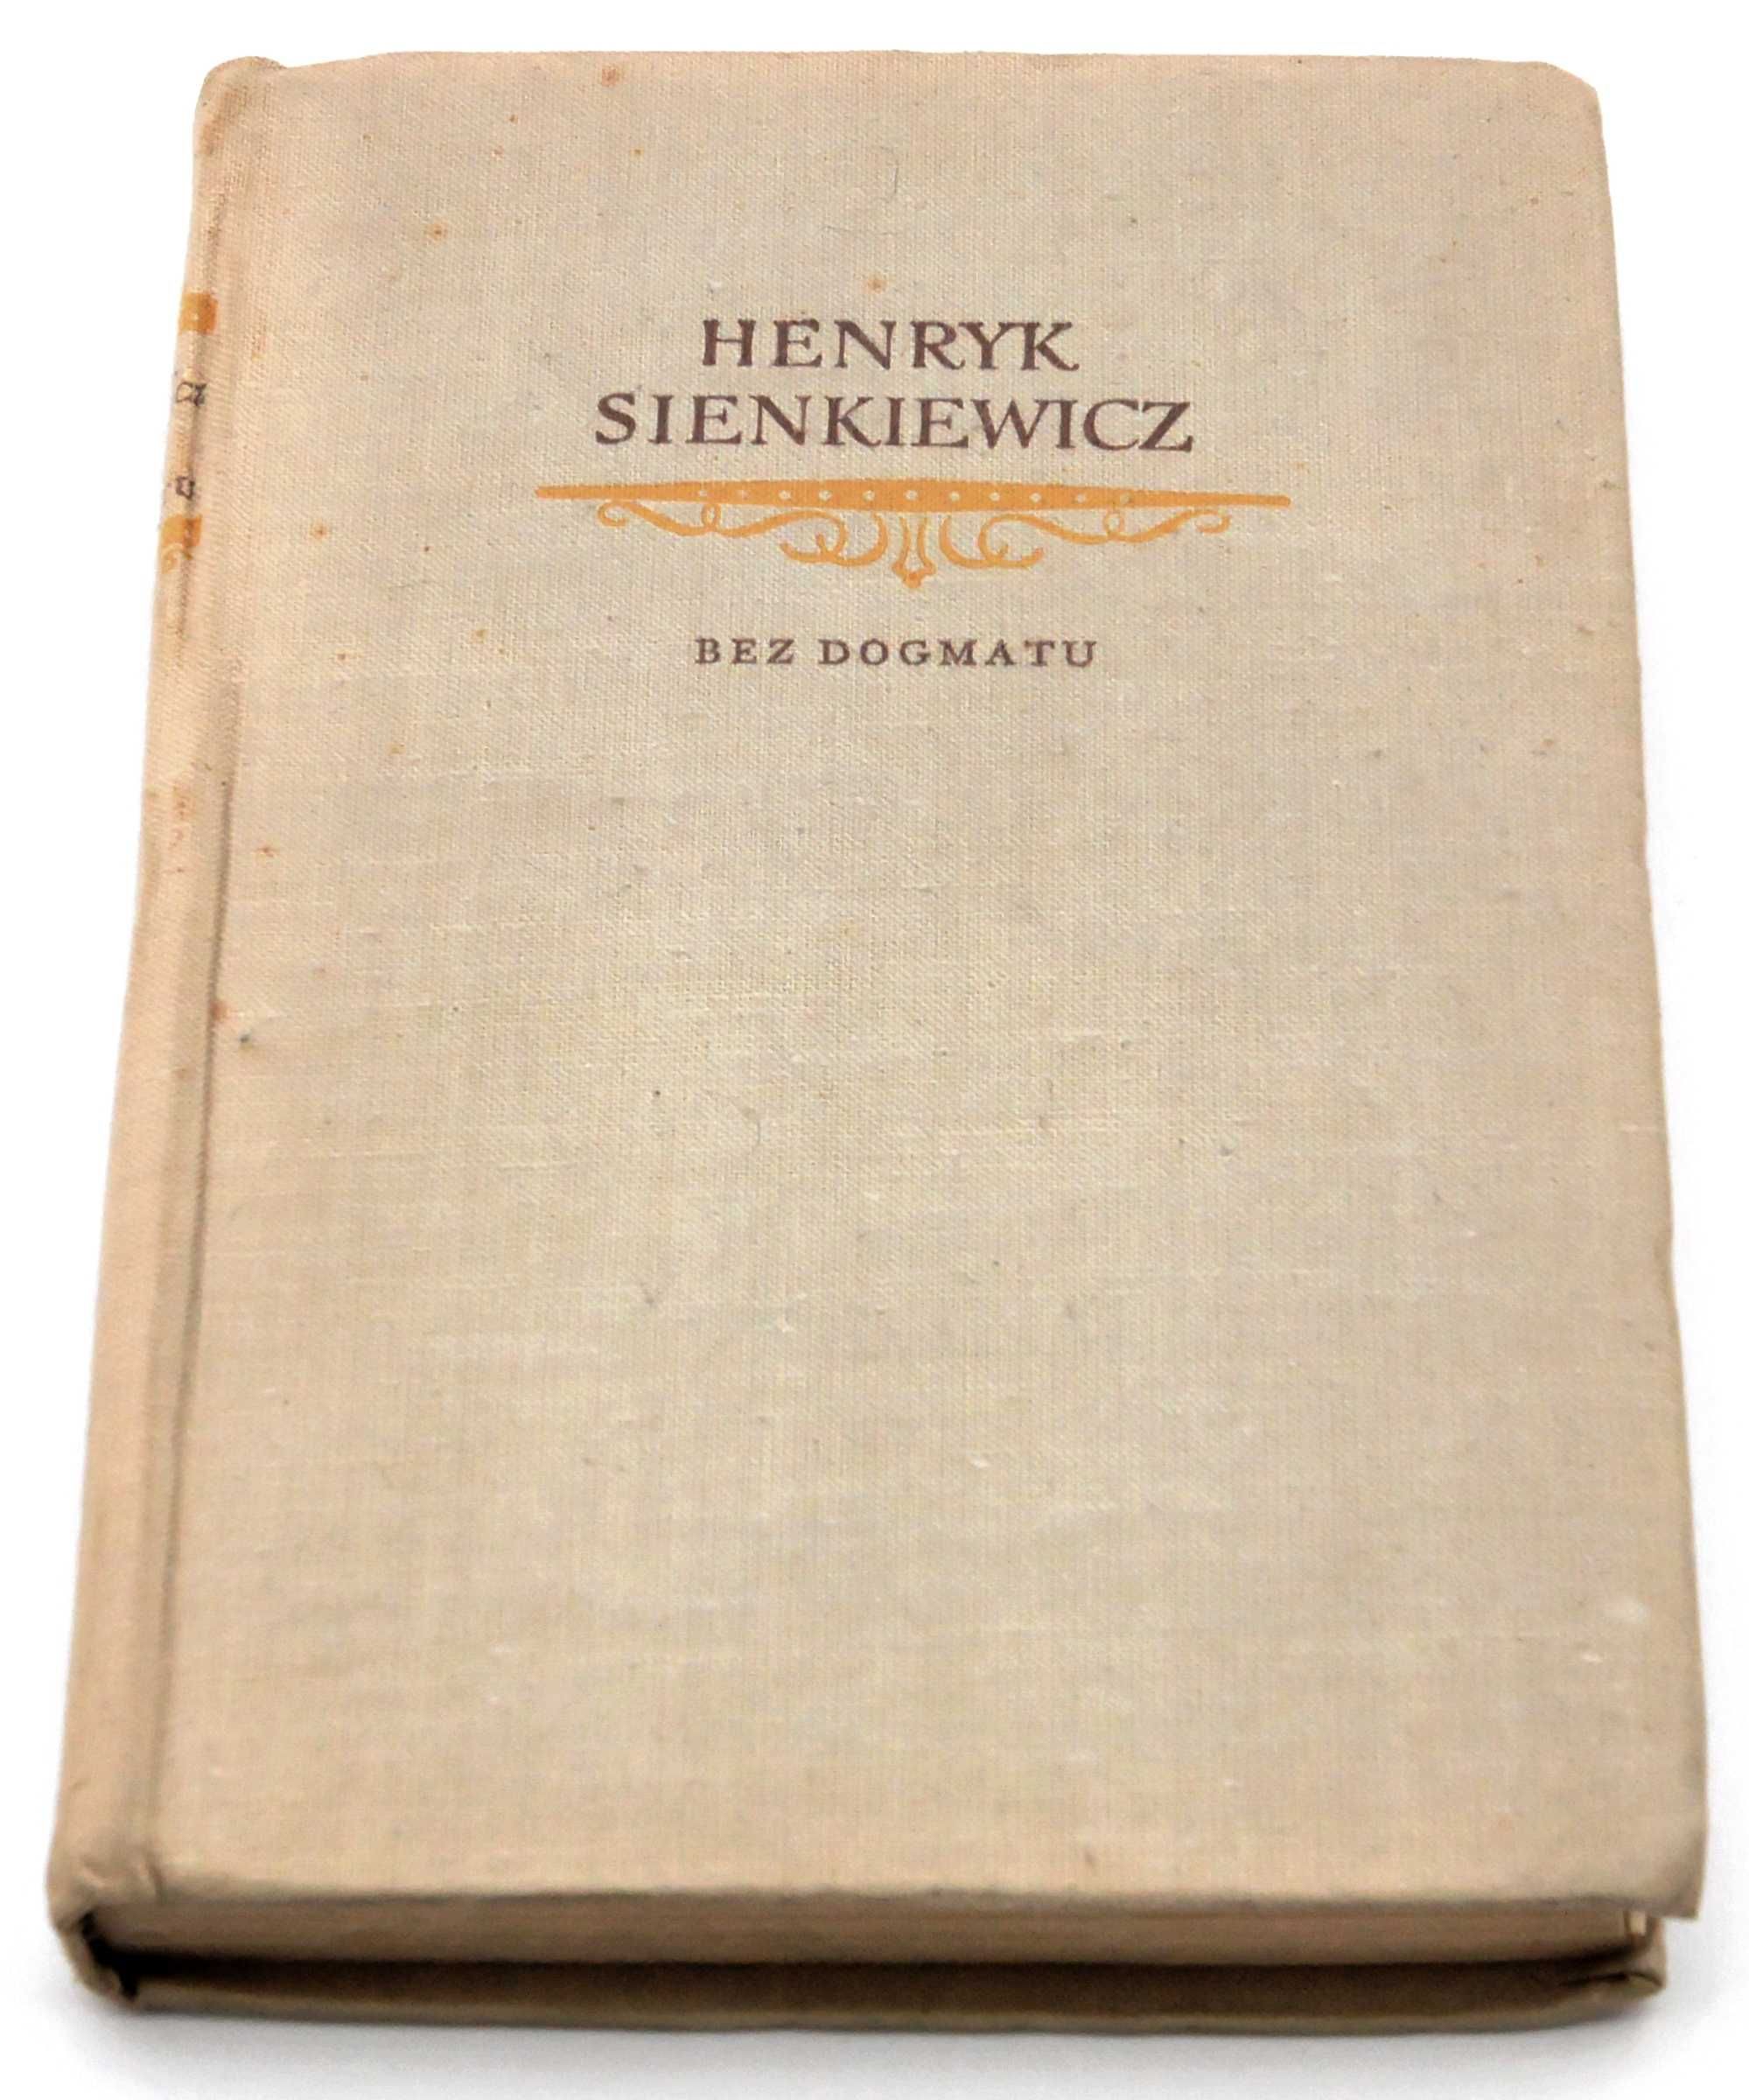 Bez dogmatu - Henryk Sienkiewicz, 1958